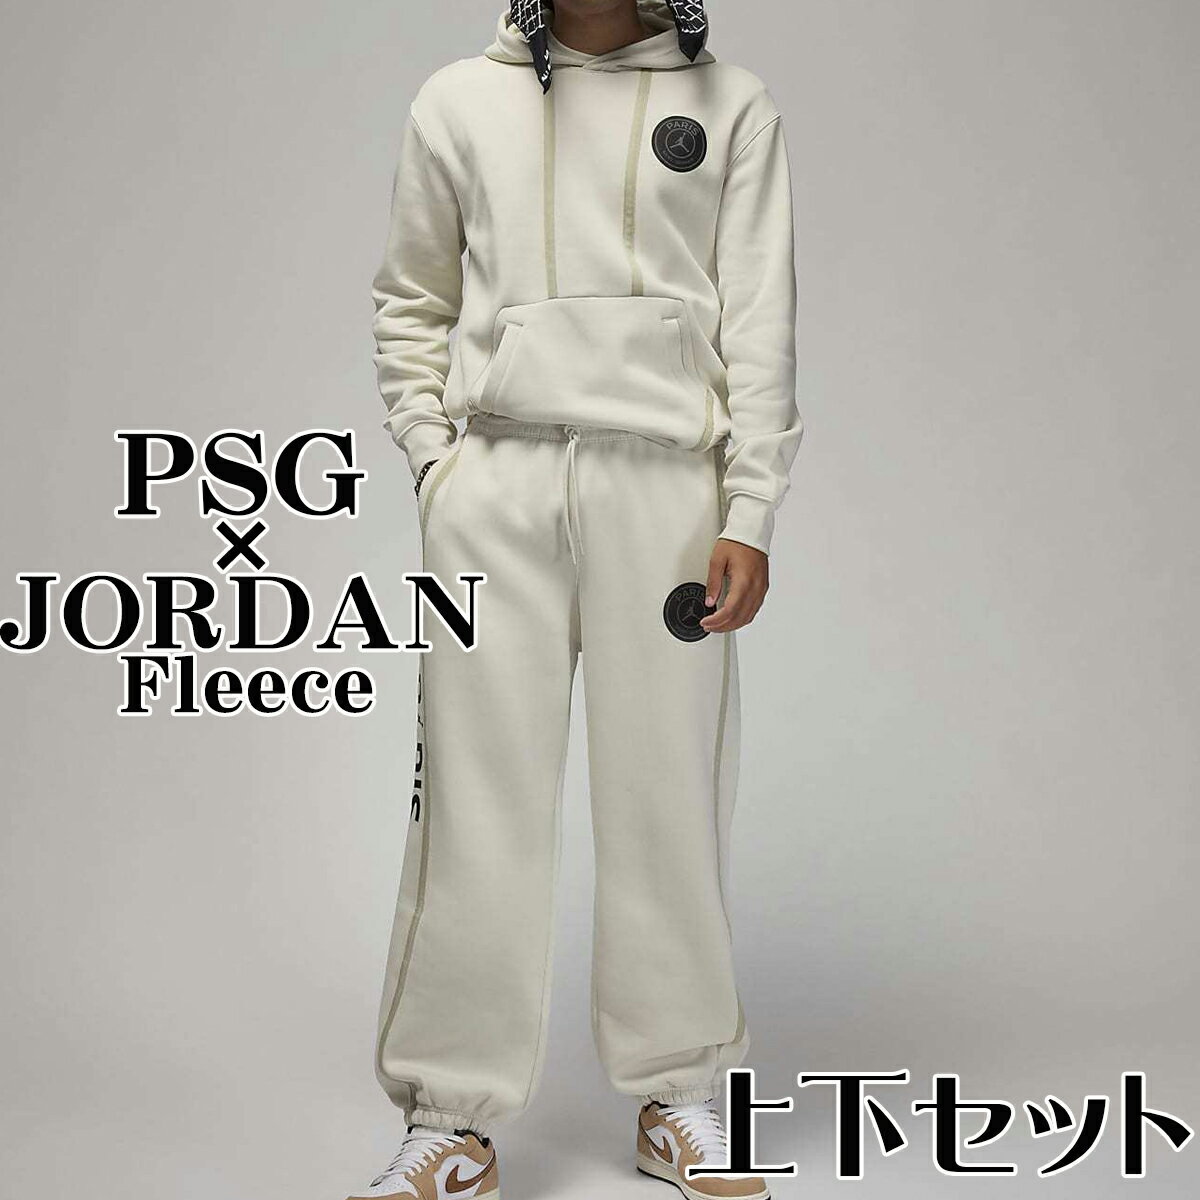 ジョーダン PSG セットアップ パリサンジェルマン コラボ JORDAN PSG 新作 USサイズ 上下セット ホワイト パーカー スウェット セットアップ ナイキ Jordan ジョーダン 正規品 衣類